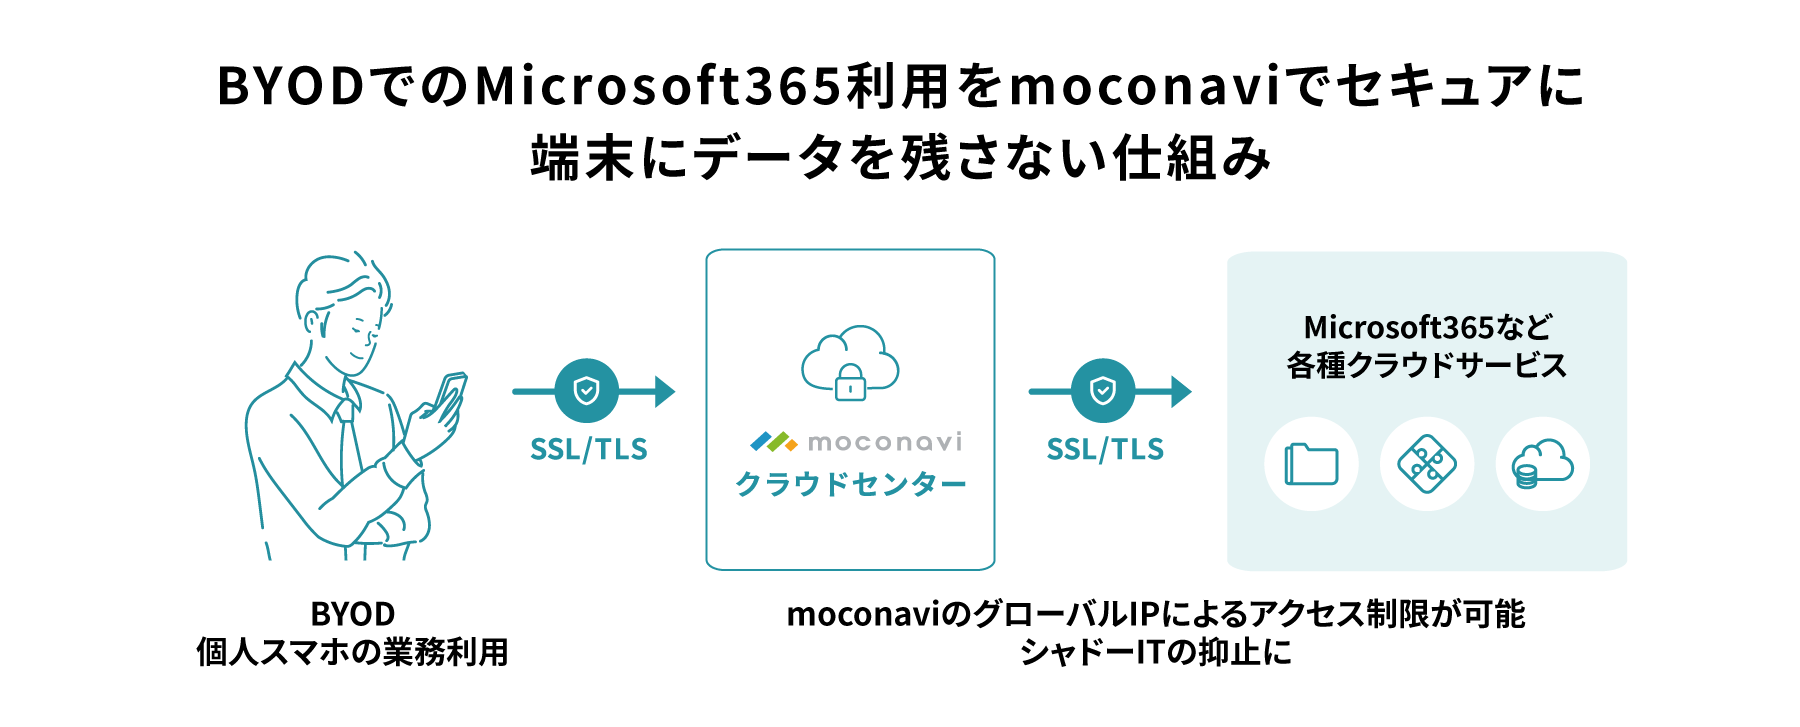 BYODでのMicrosoft365利用をmoconaviでセキュアに。端末にデータを残さない仕組み